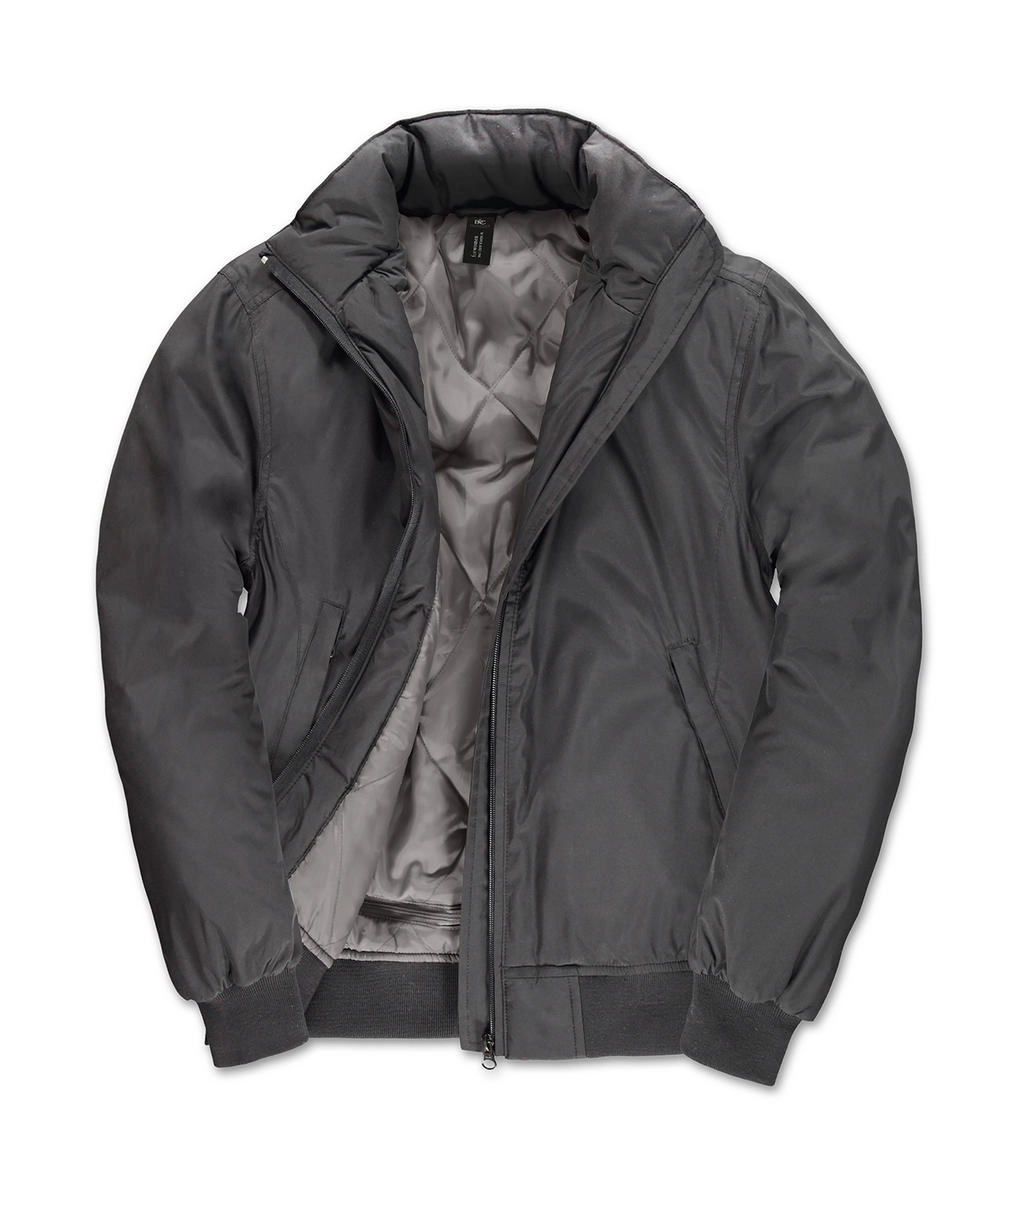 Crew Bomber/women Jacket zum Besticken und Bedrucken in der Farbe Dark Grey/Warm Grey mit Ihren Logo, Schriftzug oder Motiv.